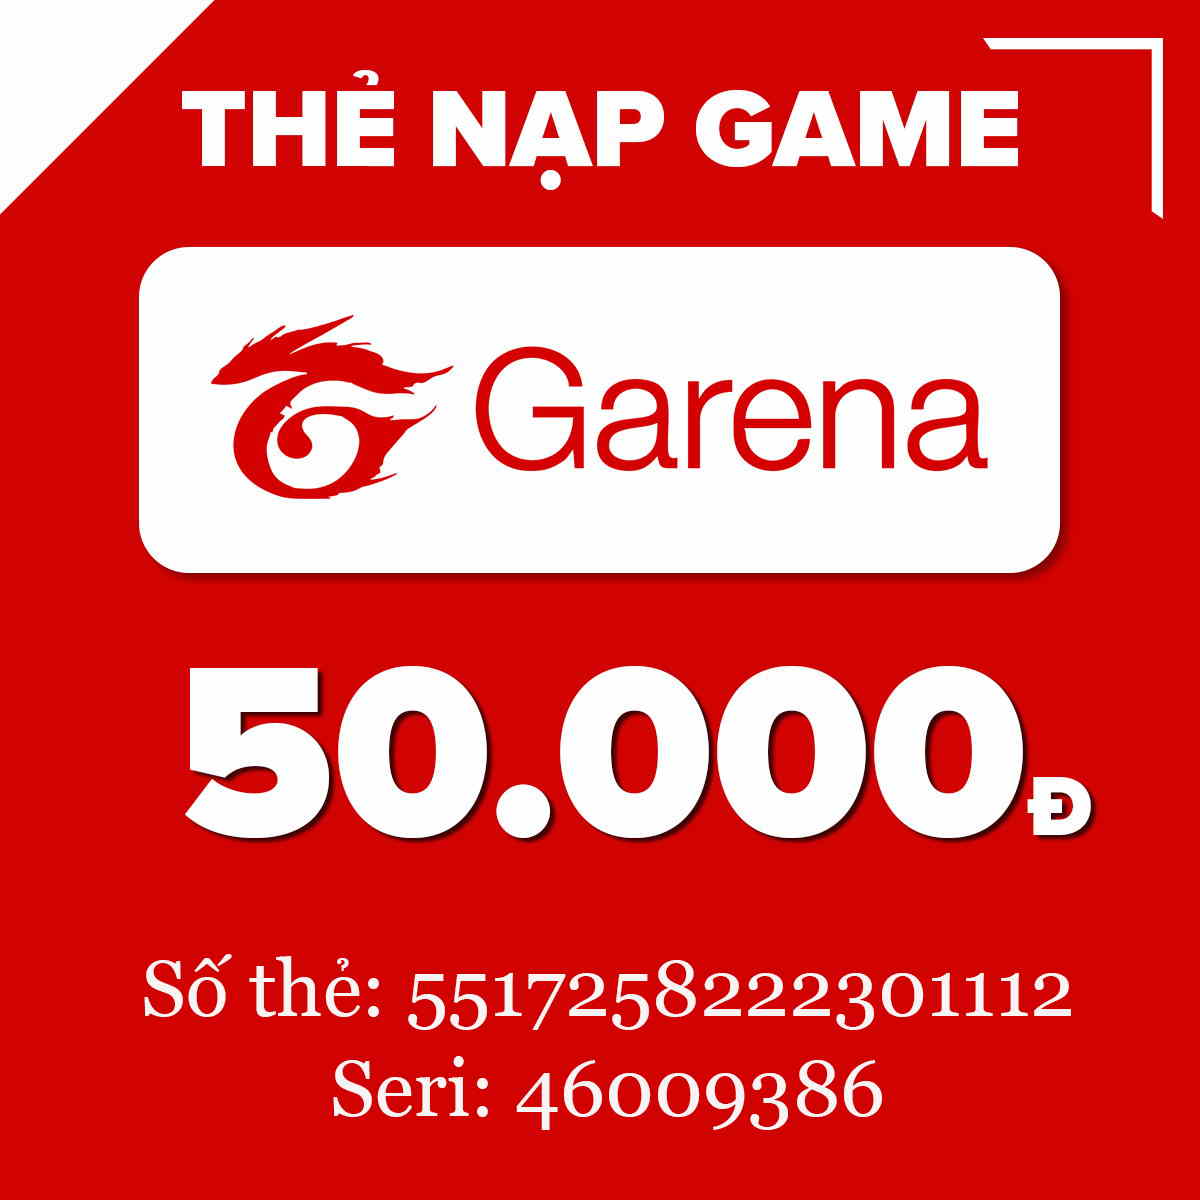 Garena là một trong những địa chỉ được nhiều game thủ yêu thích nhất tại khu vực Đông Nam Á. Nếu bạn là người yêu thích các trò chơi mạng trực tuyến cùng với Garena, đừng bỏ lỡ hình ảnh liên quan đến từ khóa \